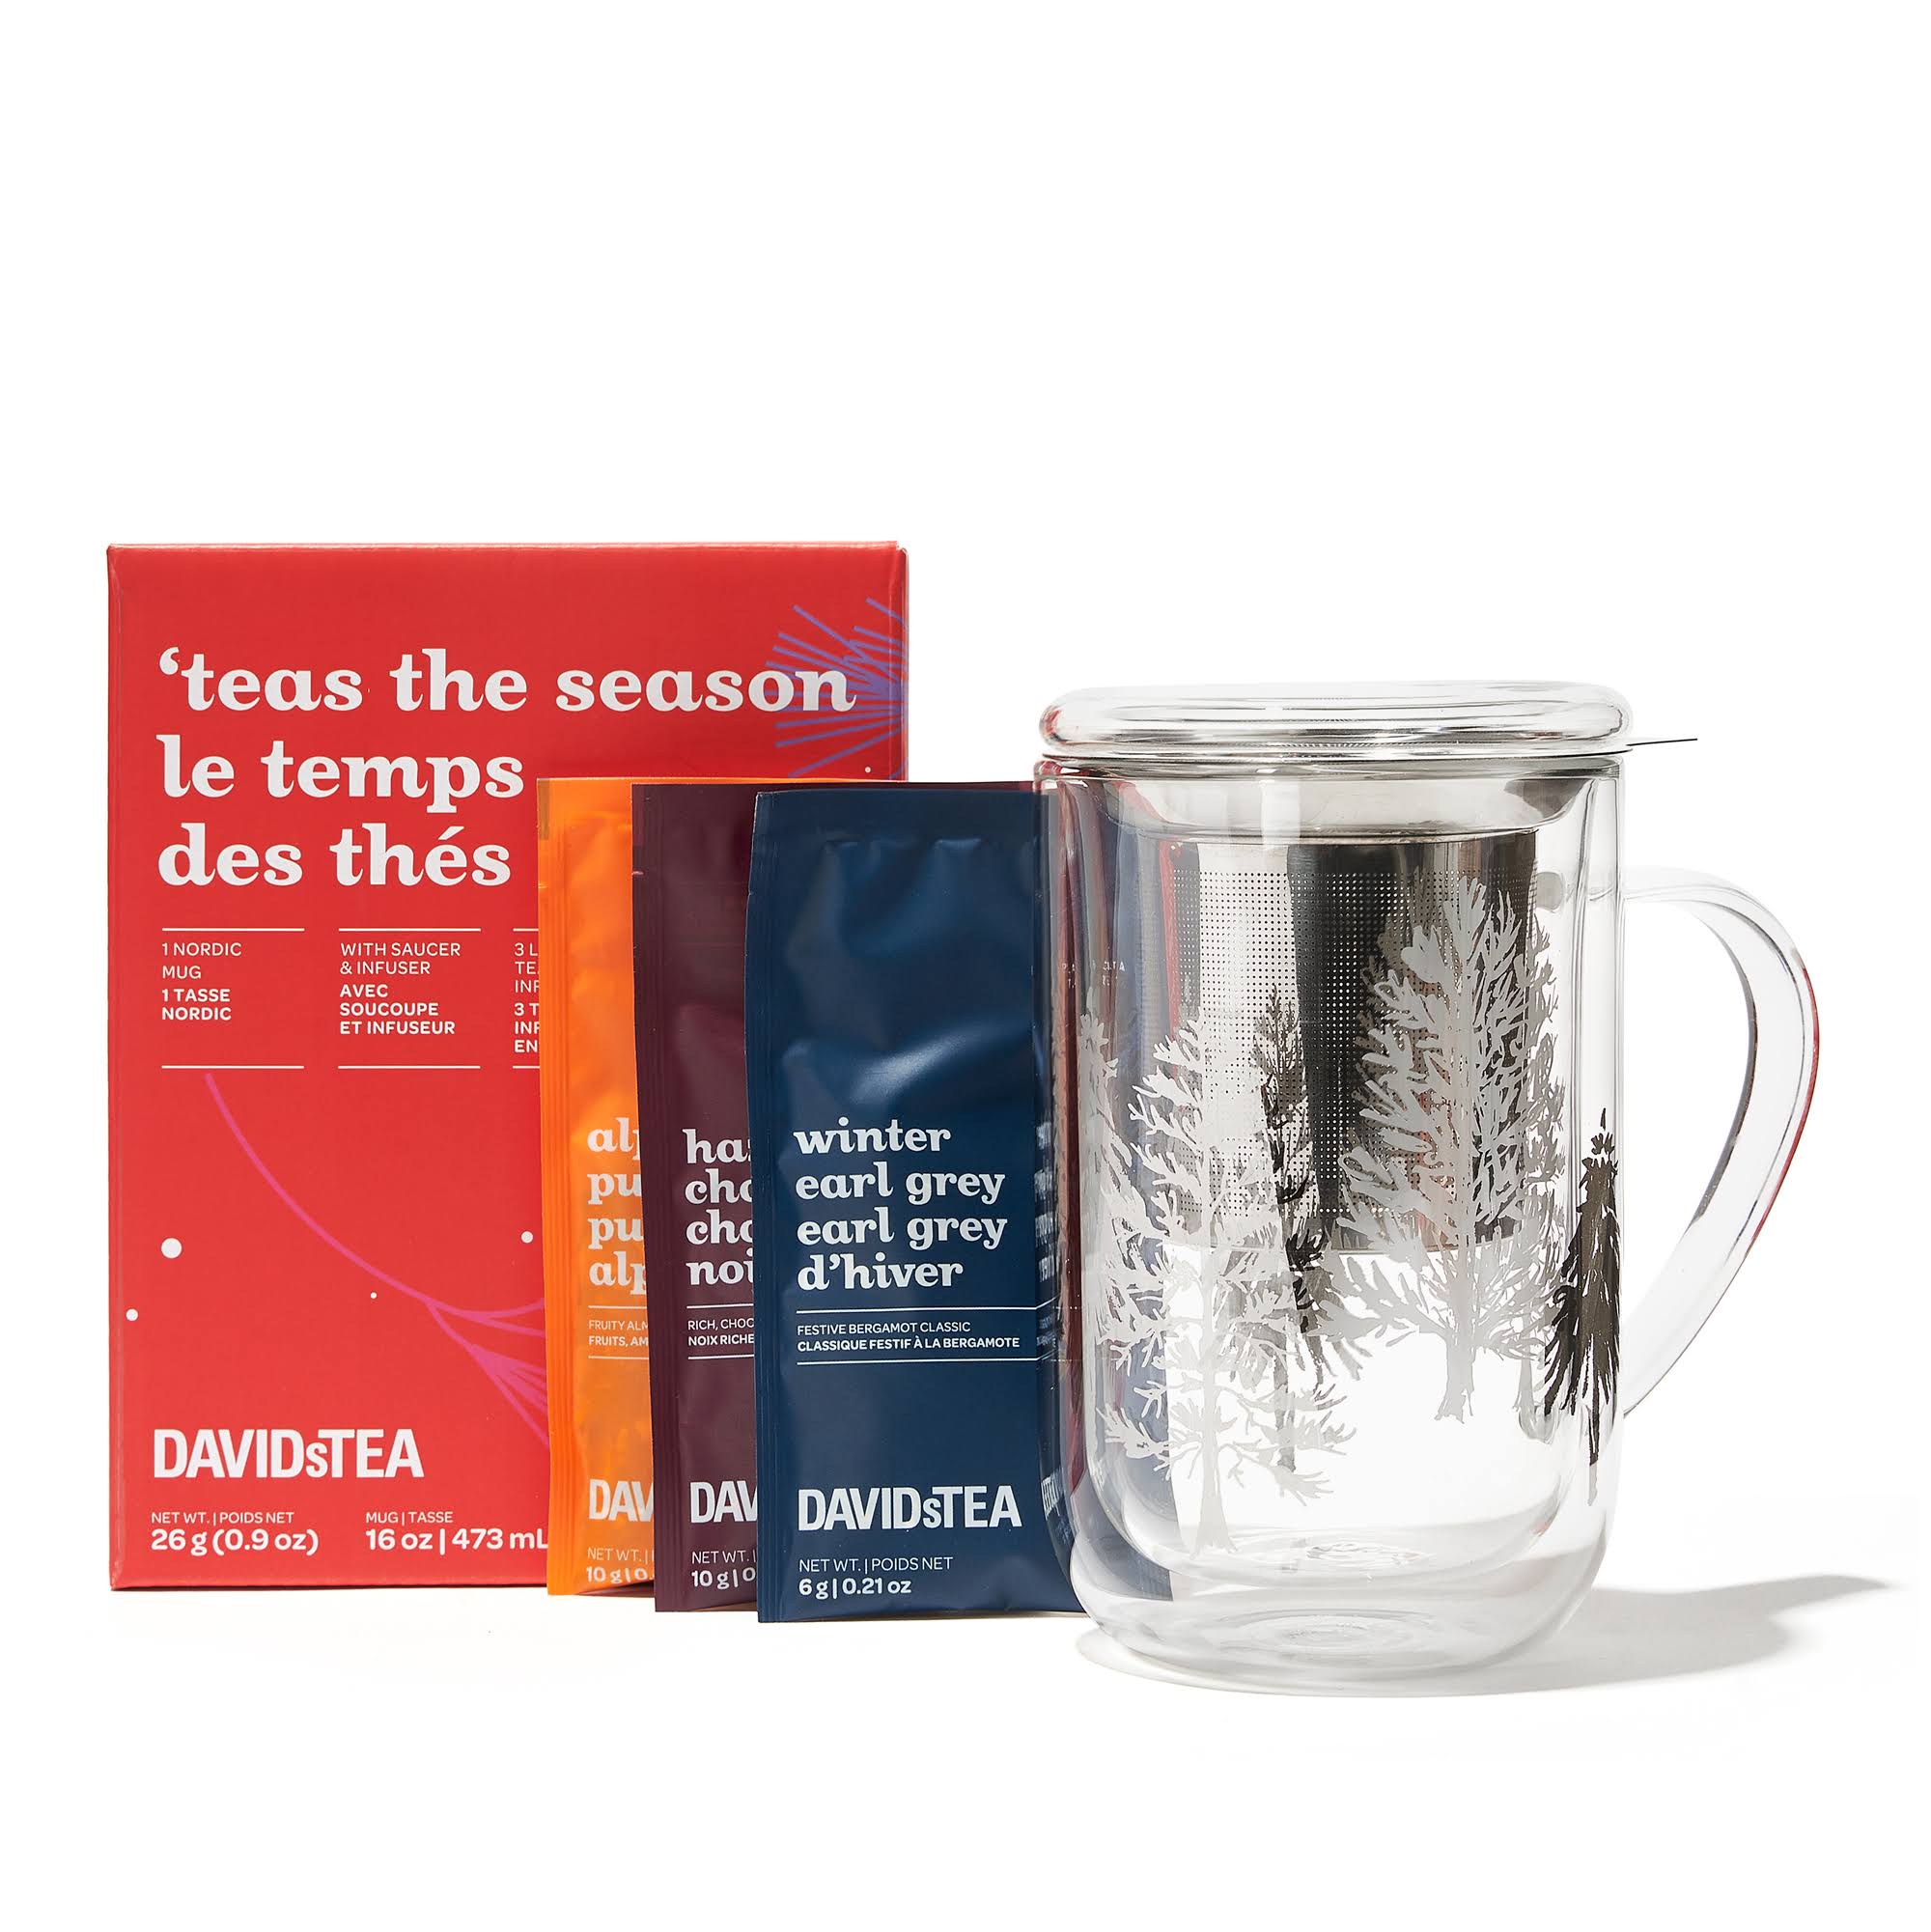 DAVIDsTEA - Nordic Mug & Holiday Tea Gift Set - 16 oz / 473 ml